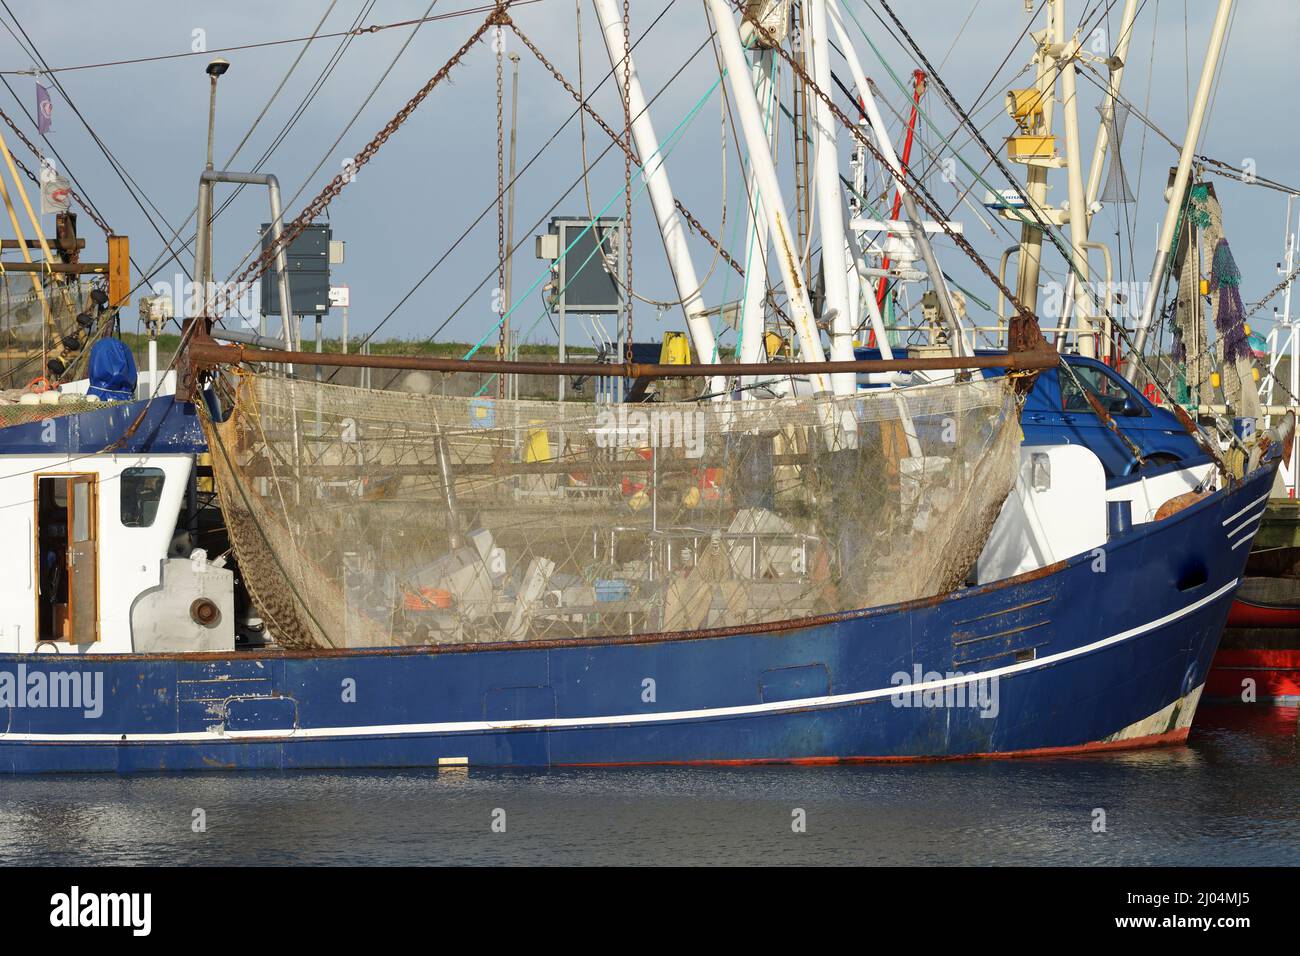 Fishing boat in the harbor Denmark Stock Photo